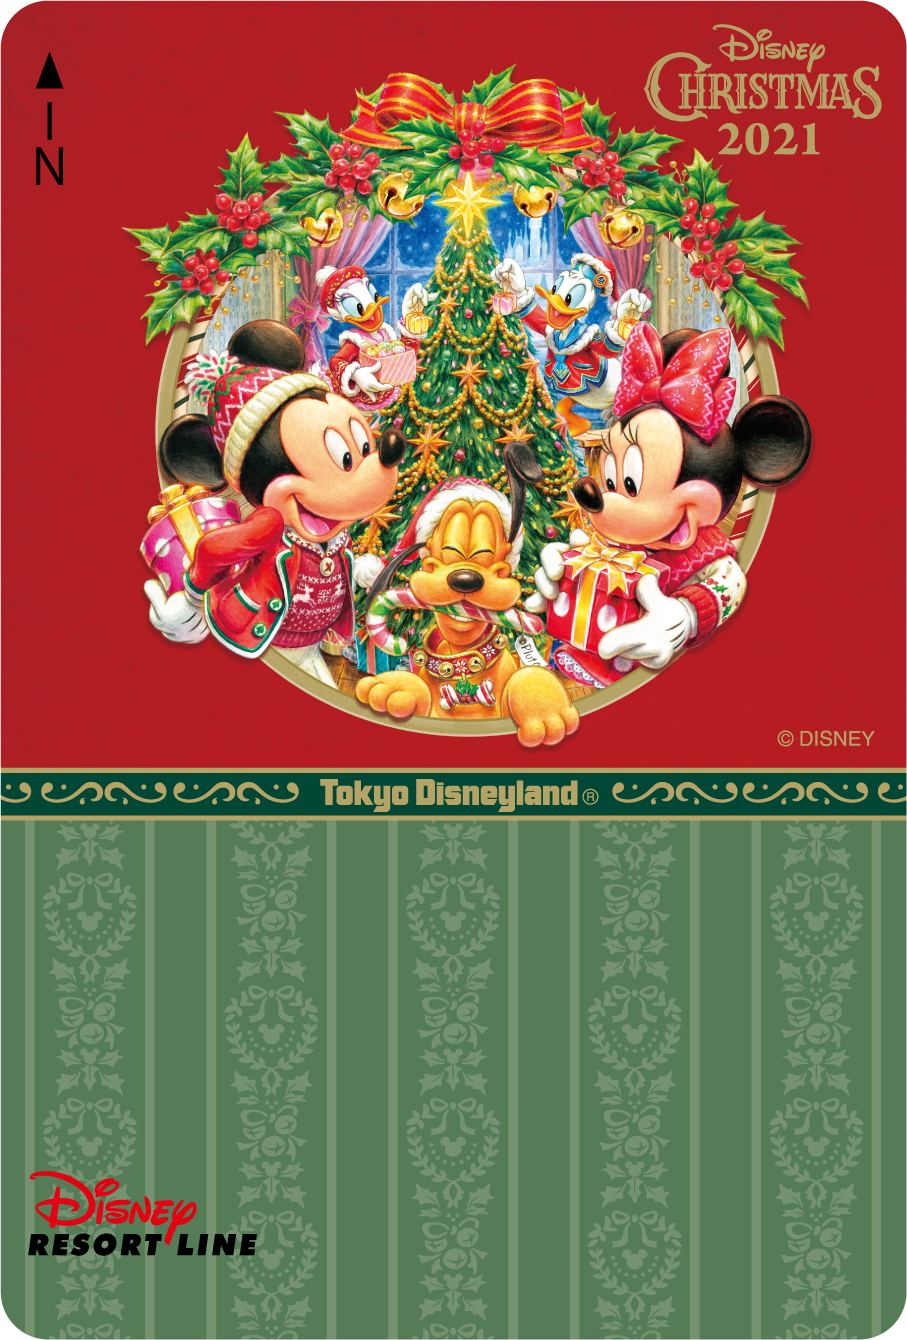 ディズニーリゾートライン フリーきっぷ ディズニー クリスマス21 東京ディズニーランド Dtimes